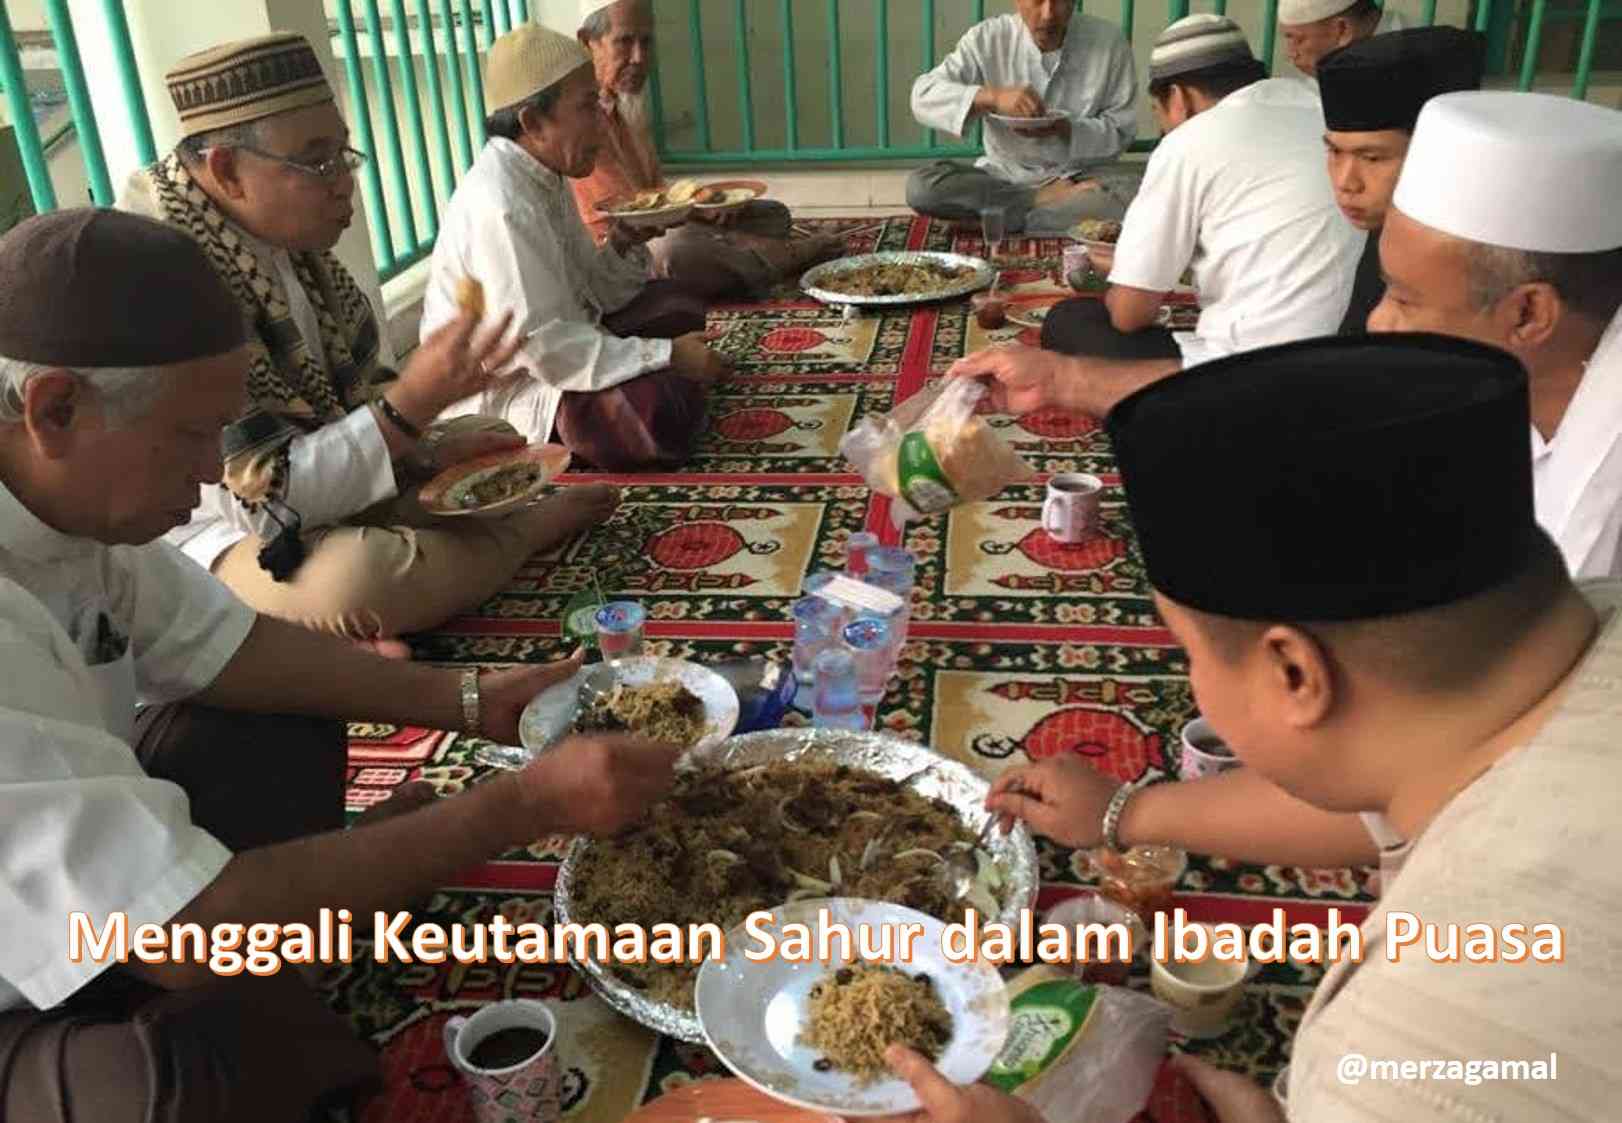 Menggali Keutamaan Sahur dalam Ibadah Puasa Ramadan